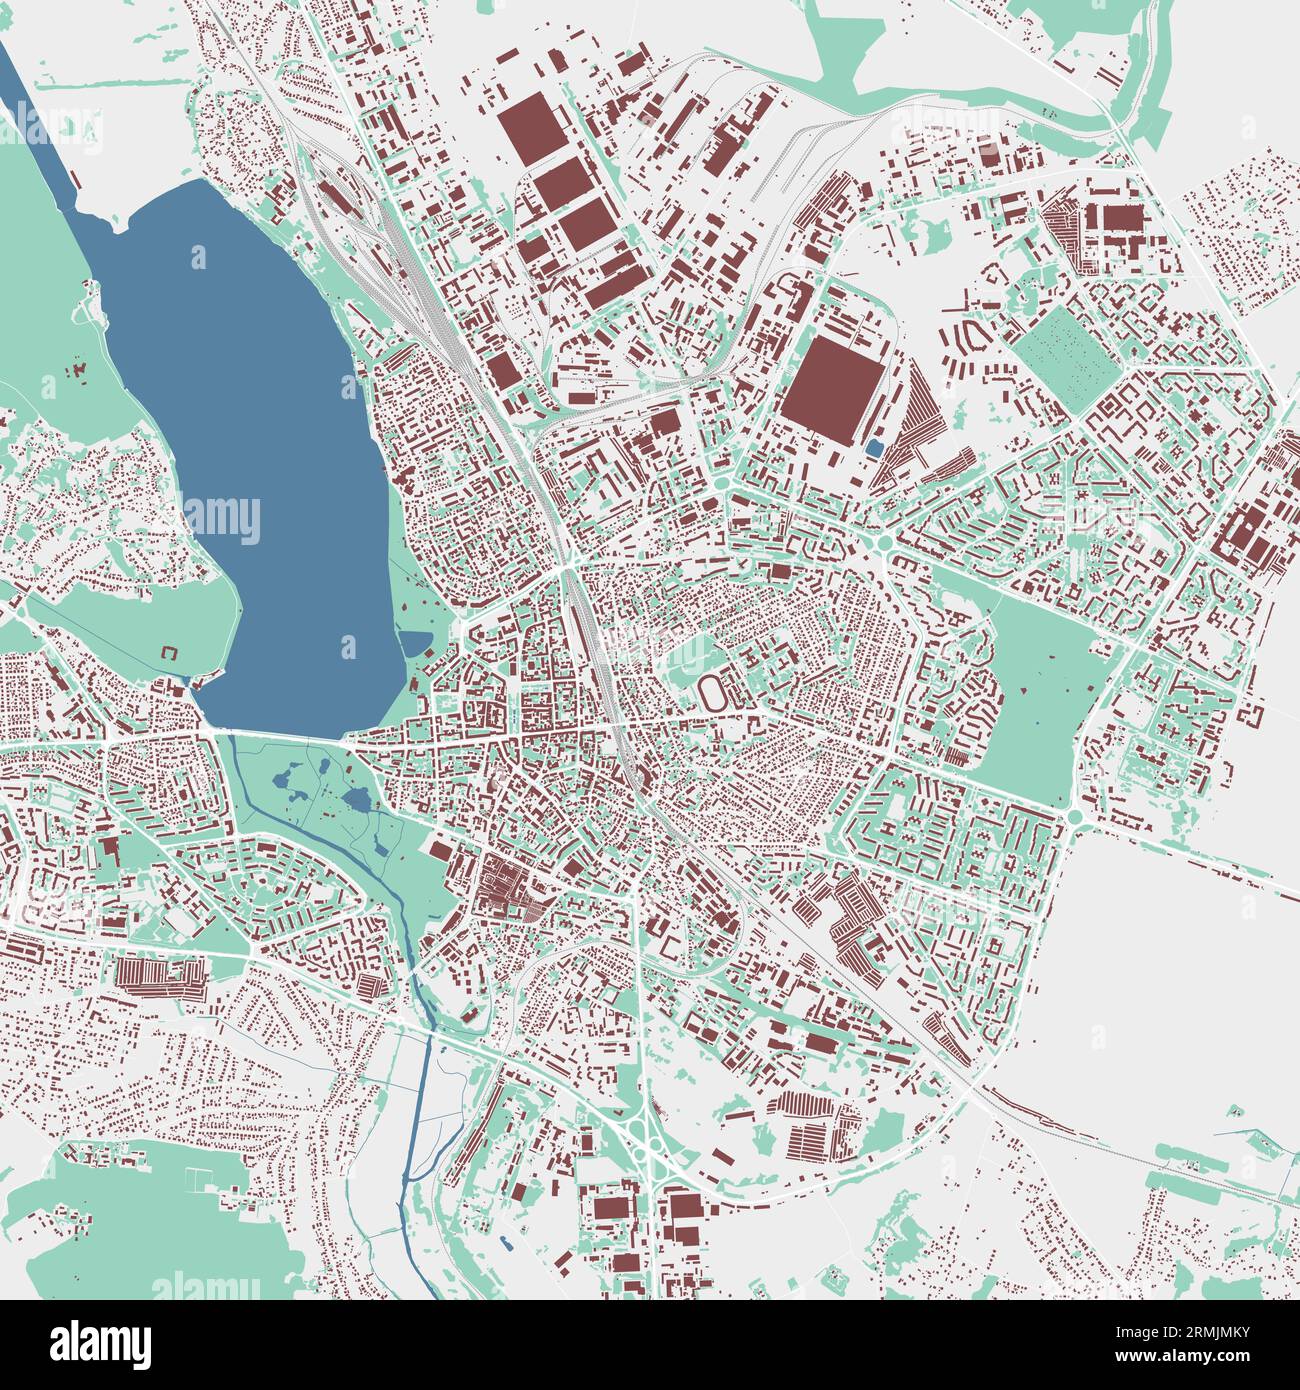 Carte de Ternopil, oblast centre ville de l'Ukraine. Carte de la zone administrative municipale avec les bâtiments, les rivières et les routes, les parcs et les voies ferrées. Illustration vectorielle Illustration de Vecteur